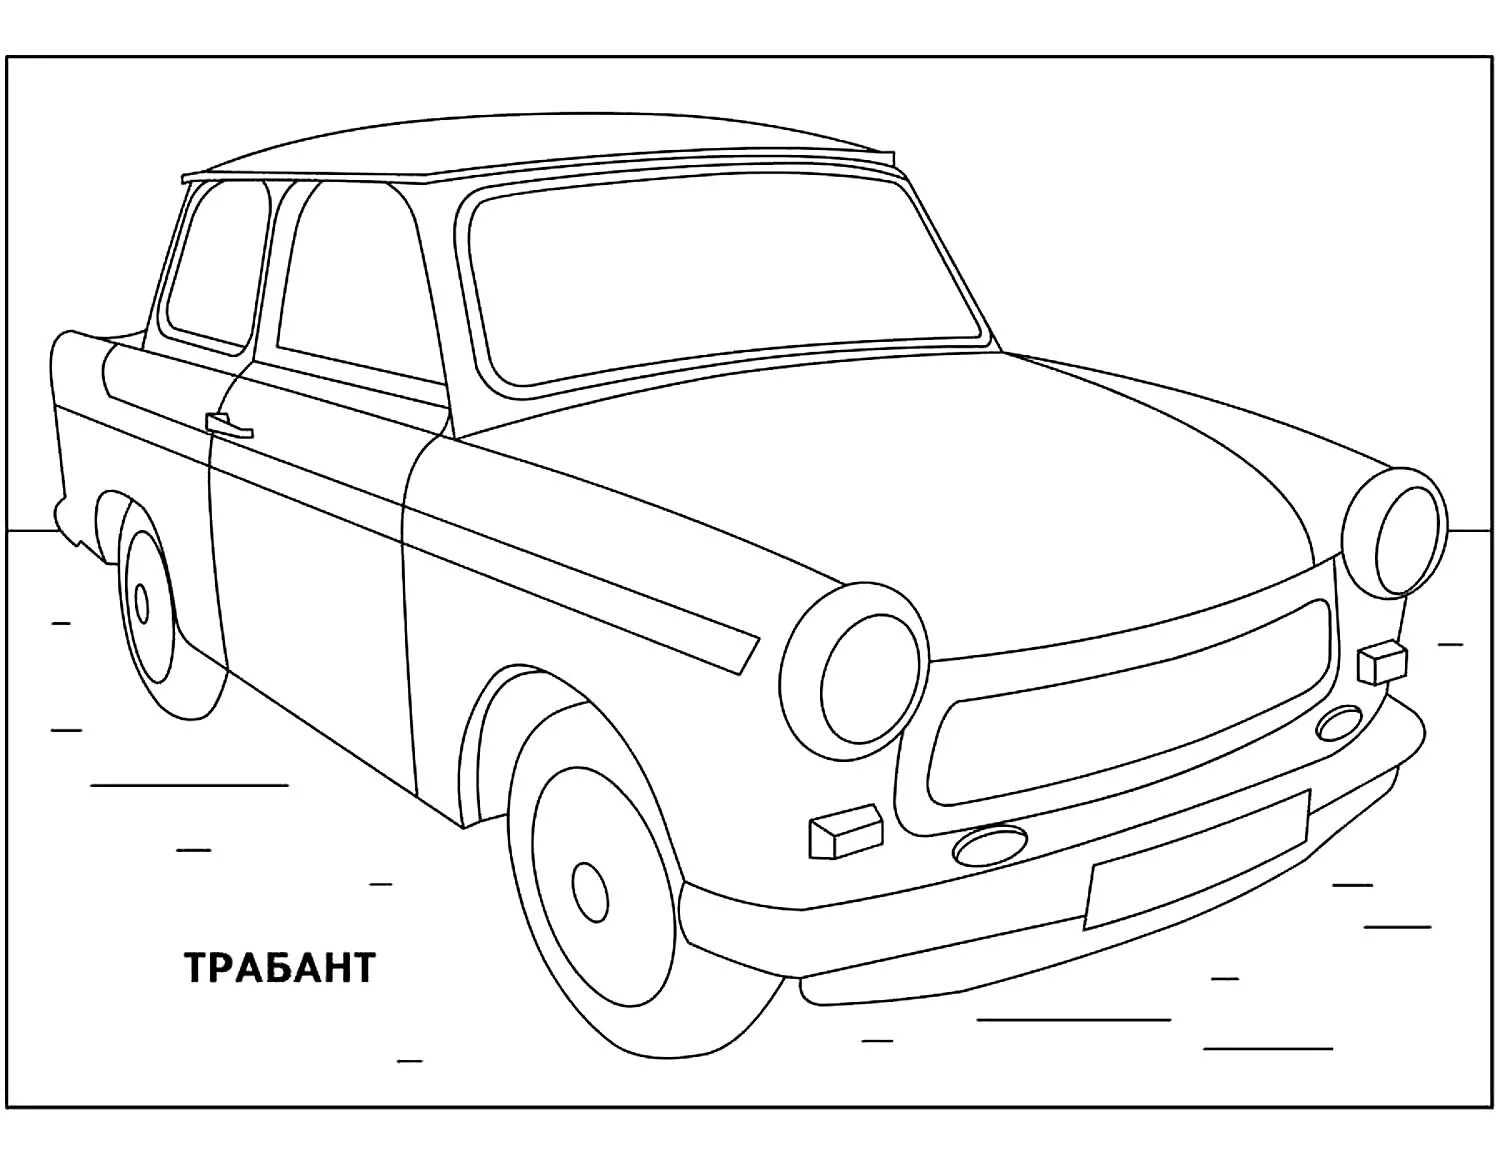 Soviet cars #6